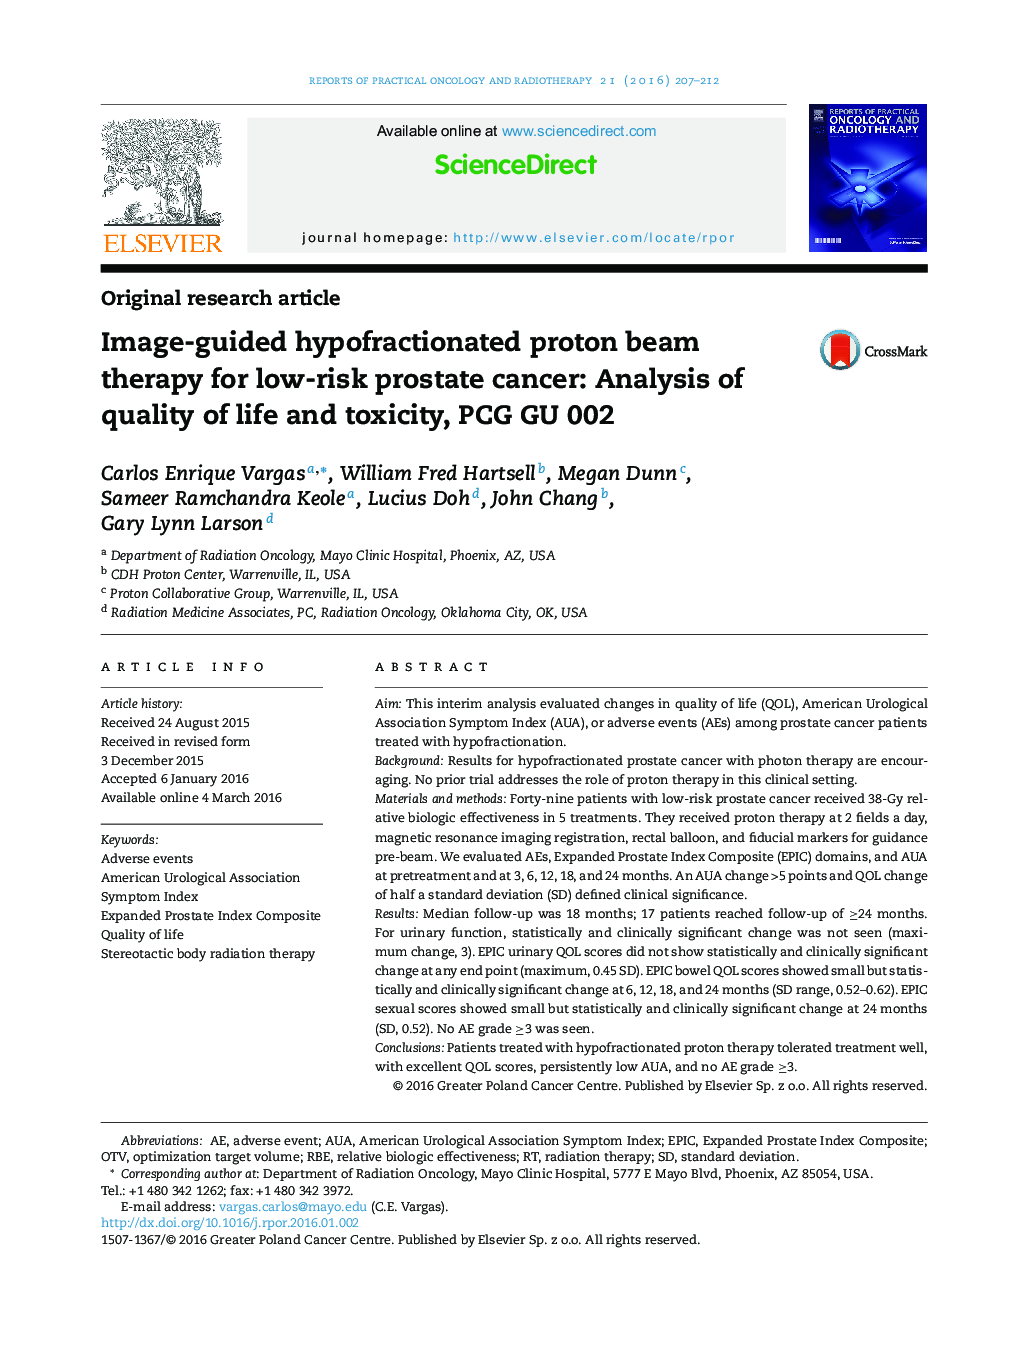 درمان پرتو پروتون با هدایت تصویر hypofractionated برای سرطان پروستات کم خطر: تجزیه و تحلیل کیفیت زندگی و سمیت، PCG GU 002